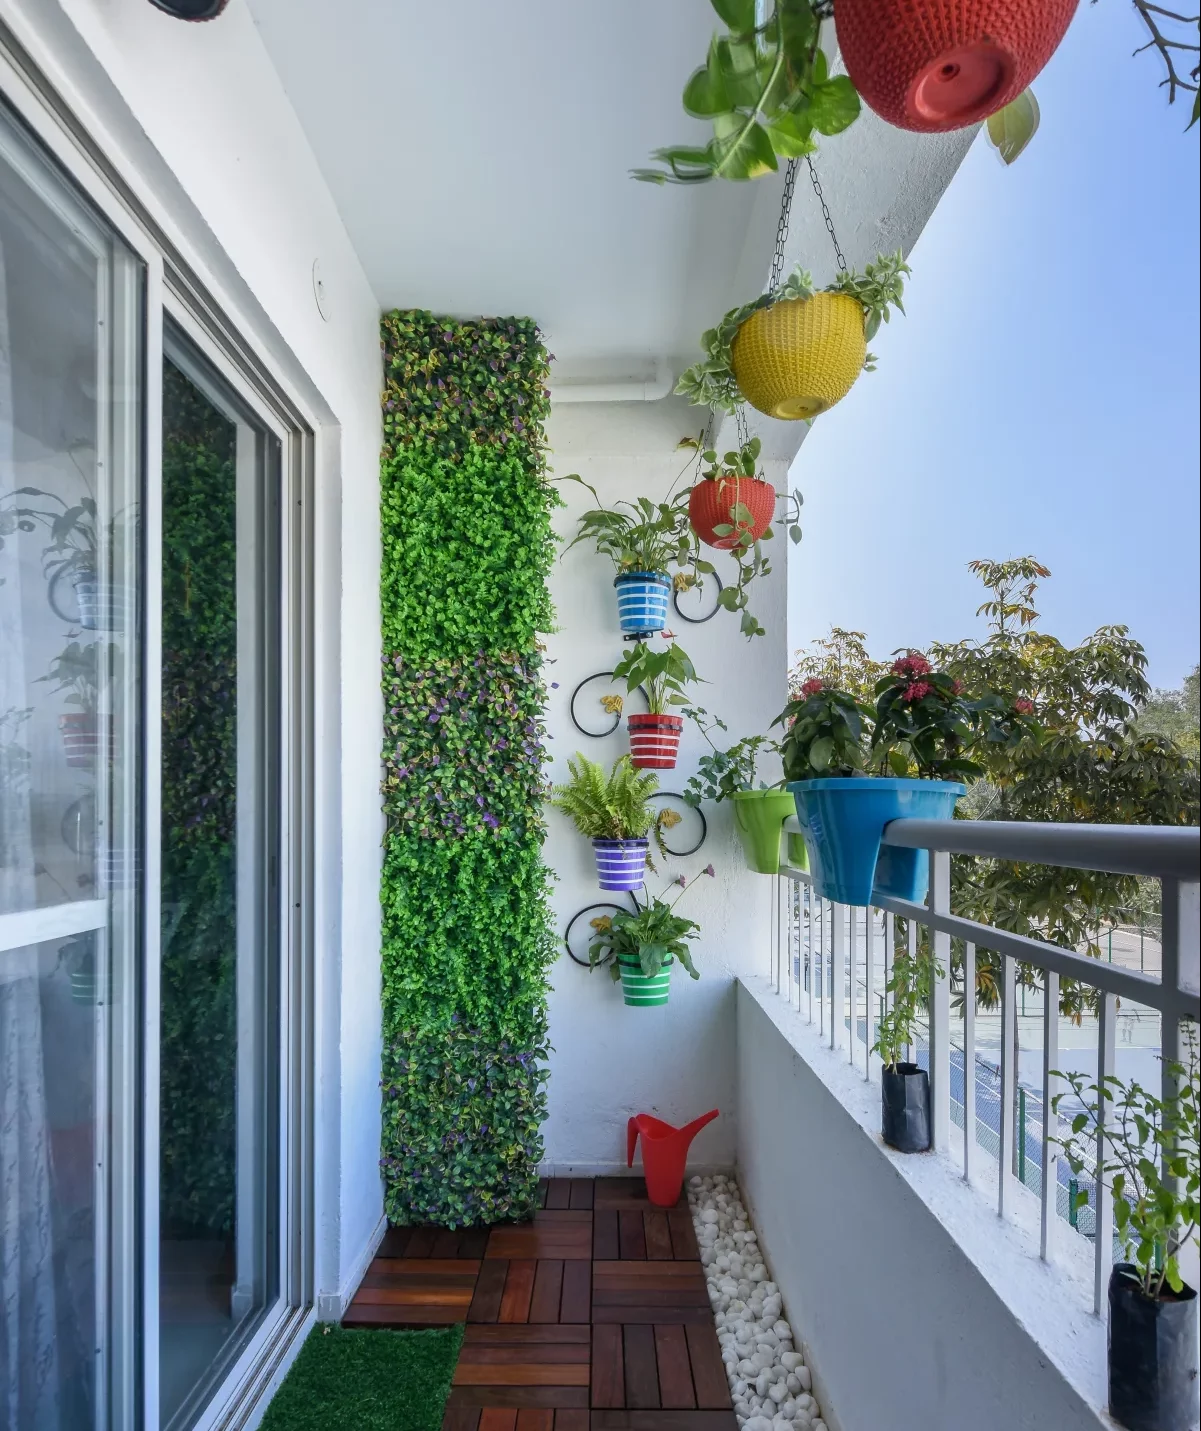 petit balcon aménagé 2m2 avec caillebotis mur vegetal artoificiel deco suspendue